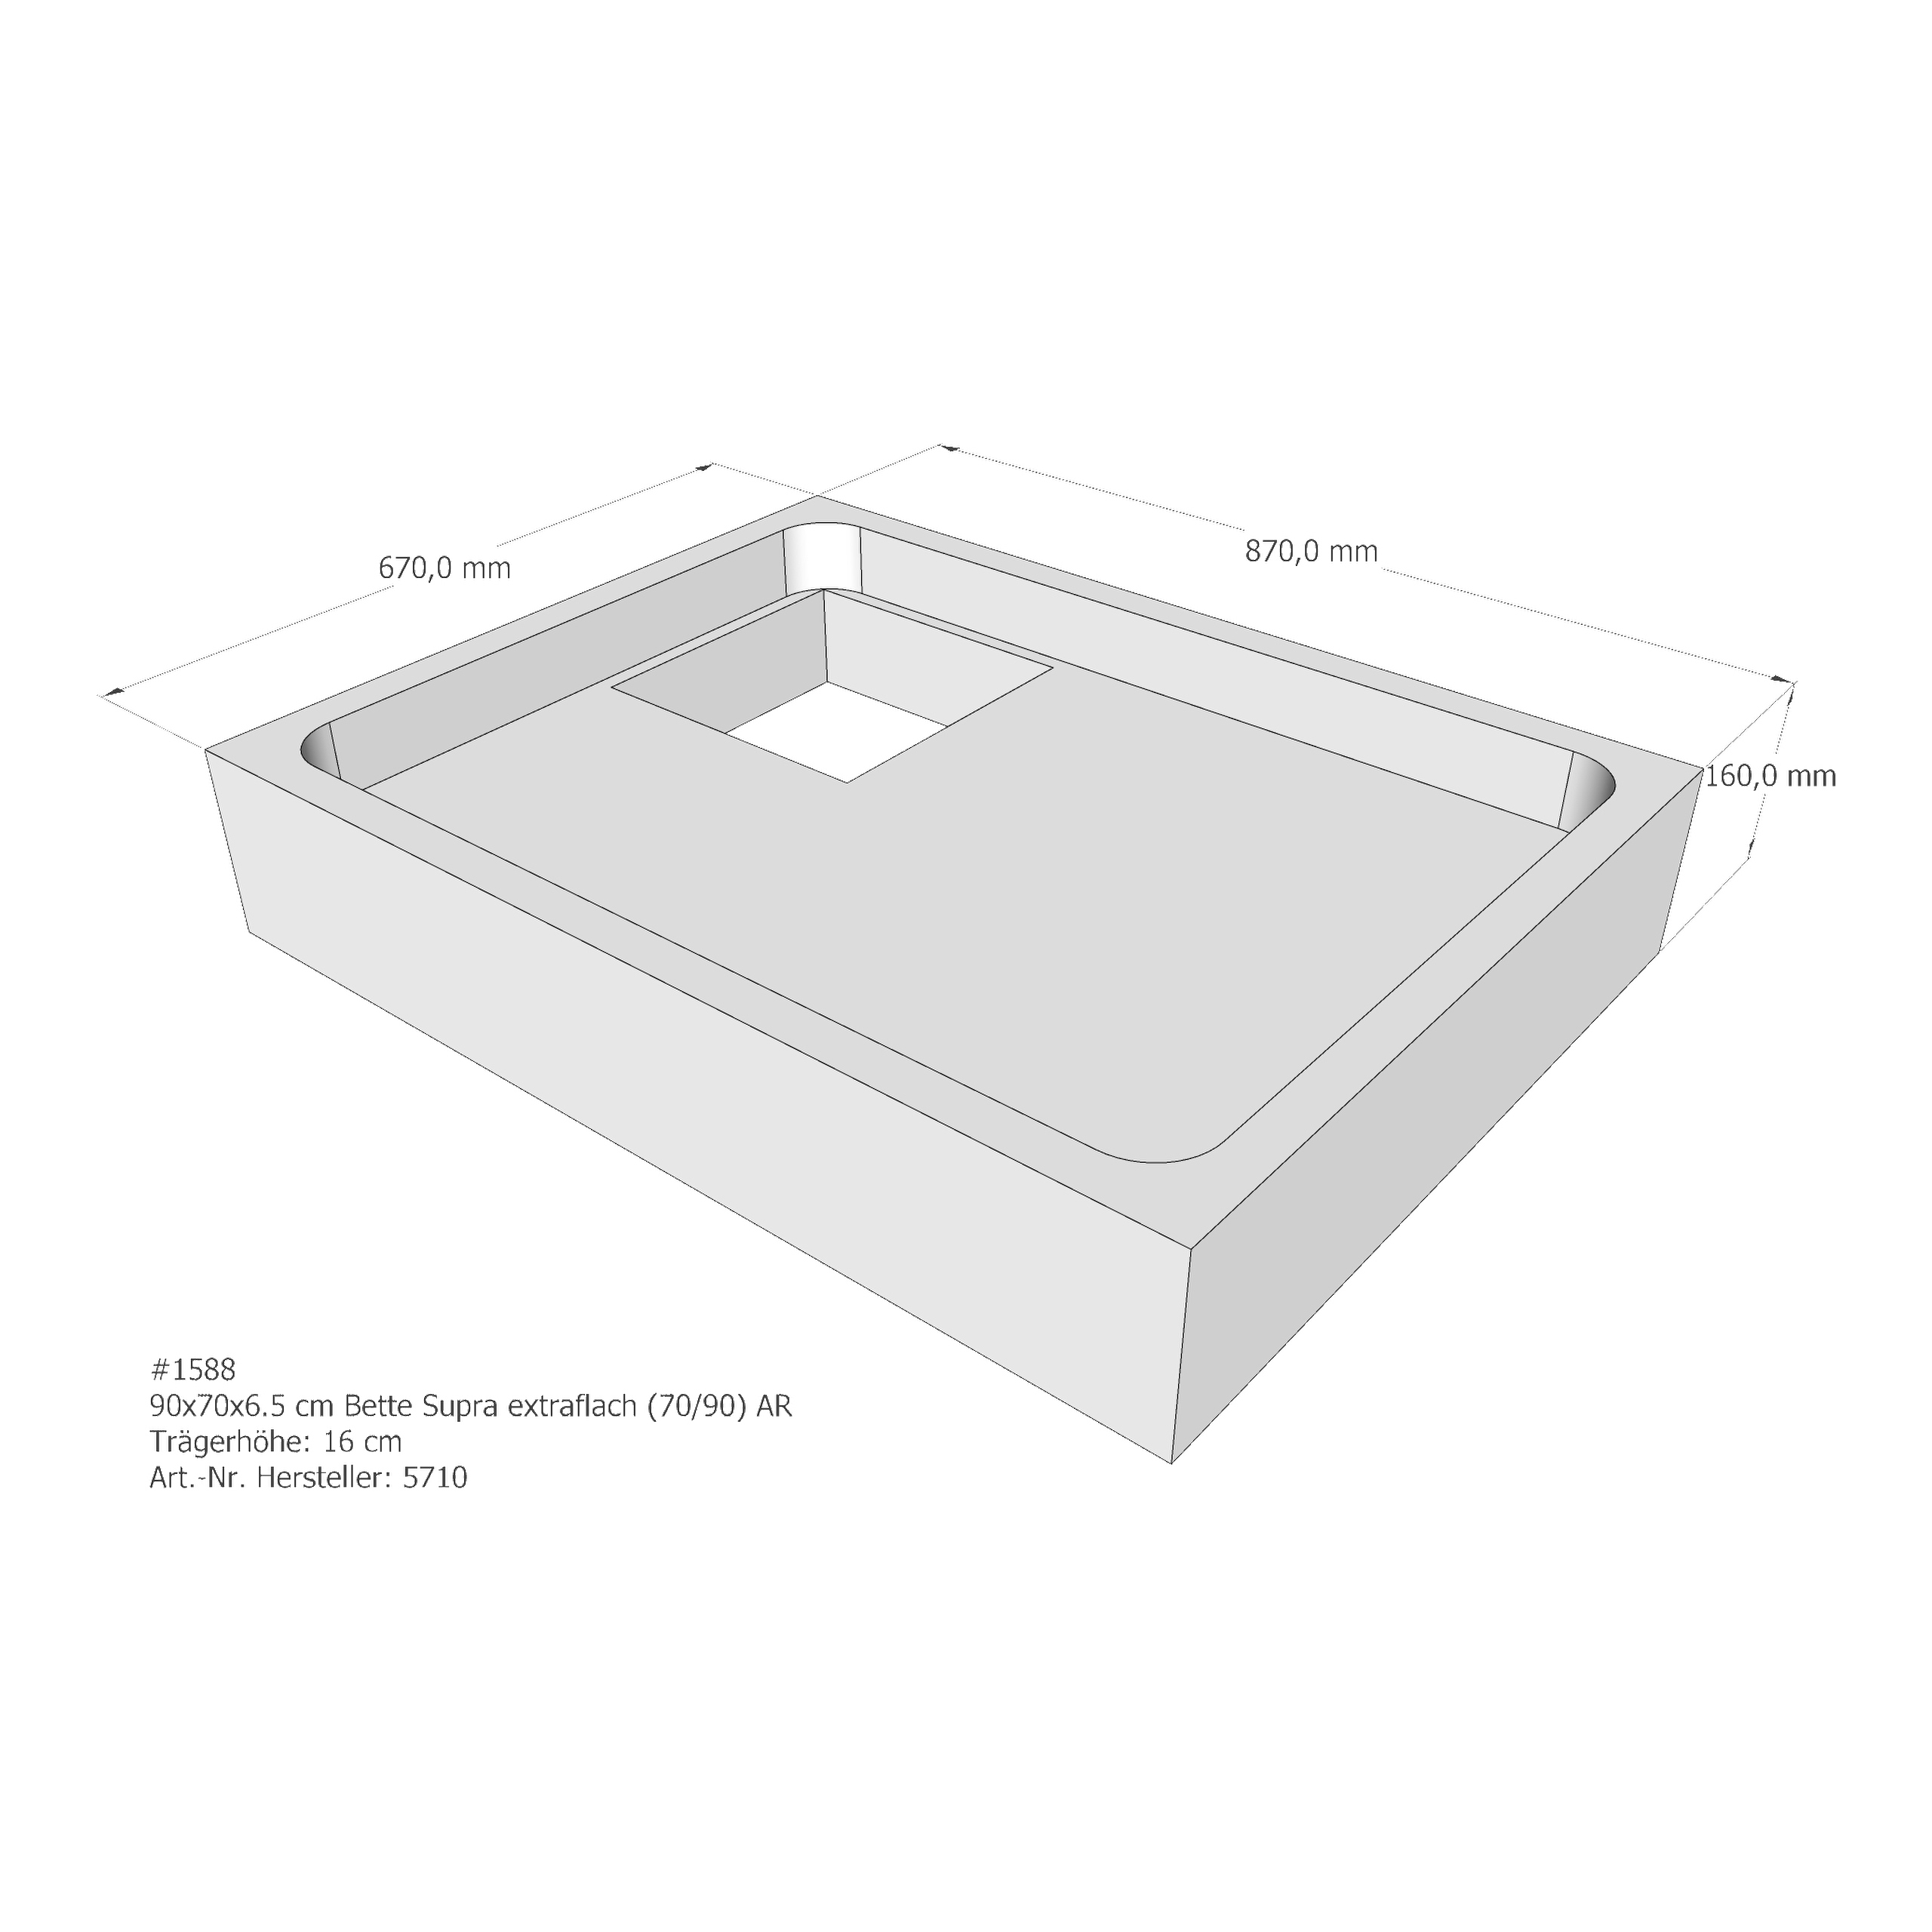 Duschwannenträger Bette BetteSupra (extraflach) 90x70x6,5 cm AR210